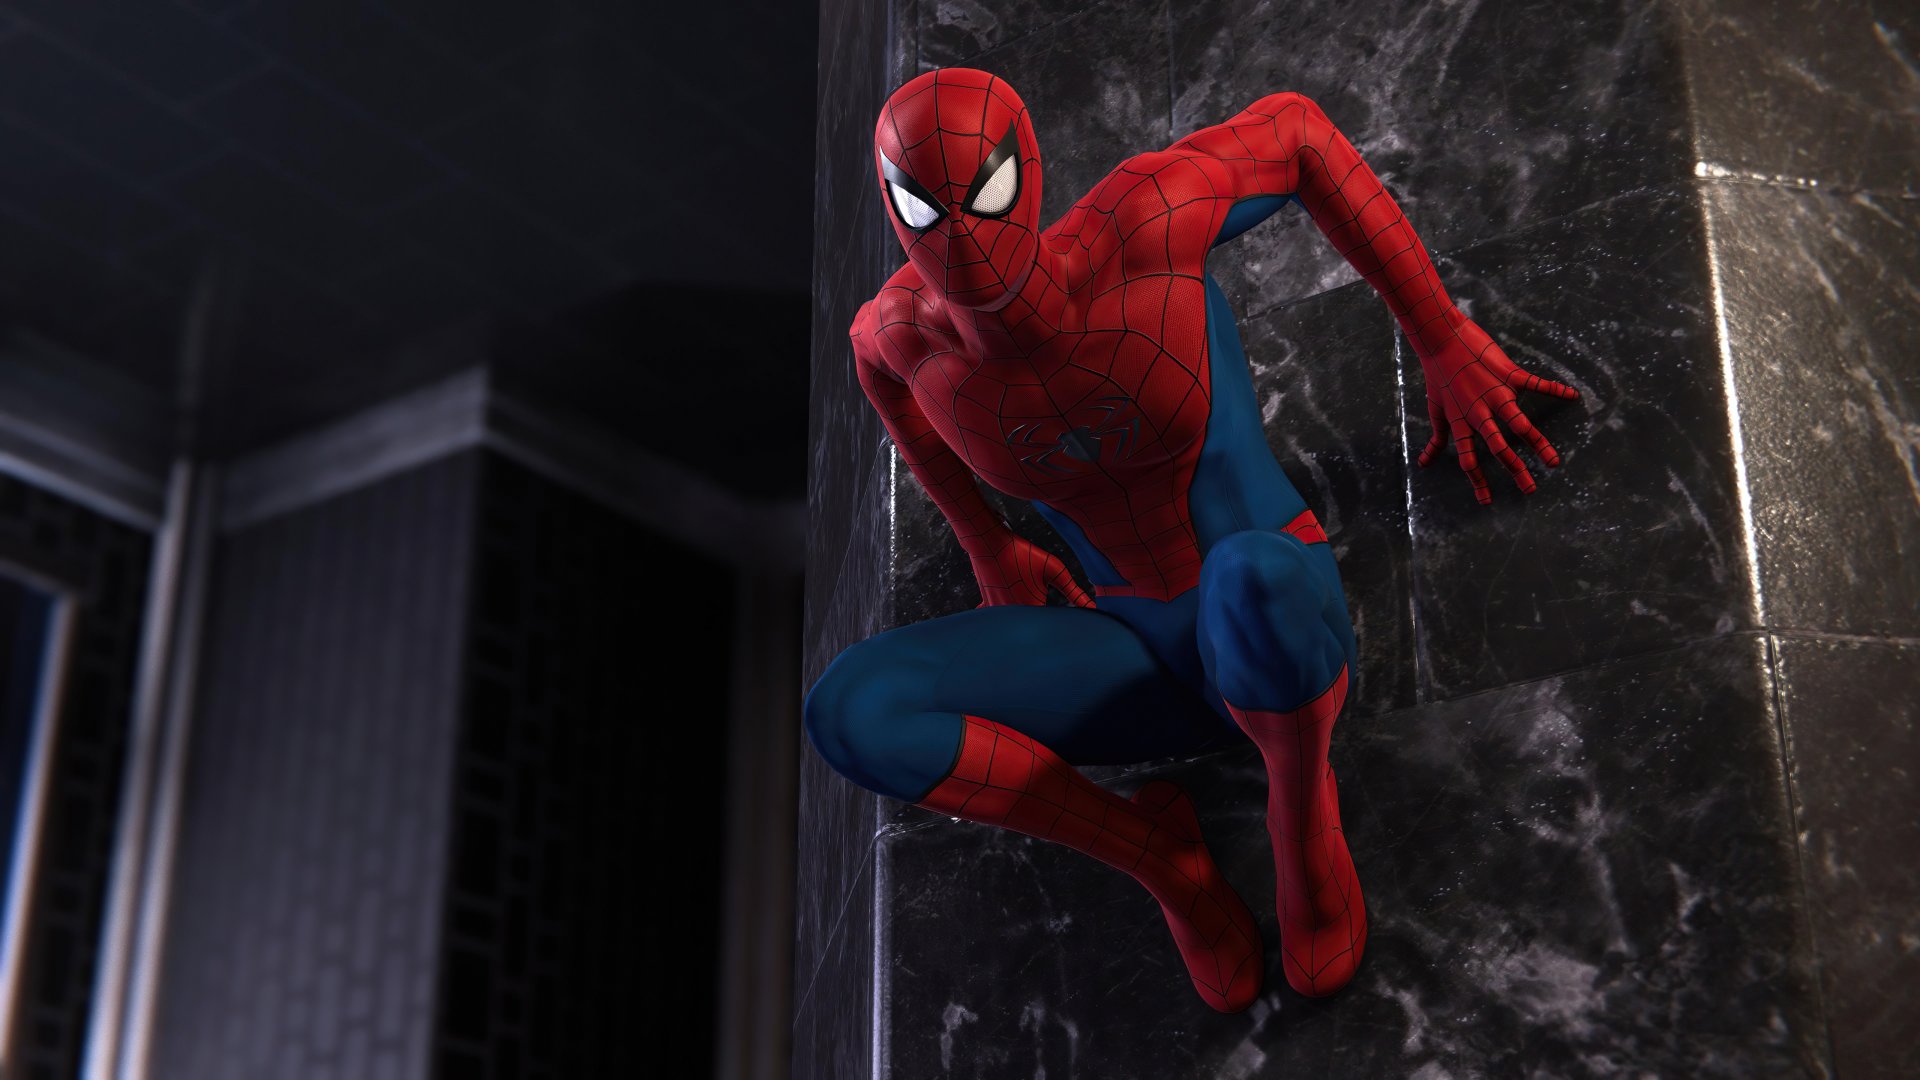 Spider Man on wall Wallpaper 5k Ultra HD ID:8229